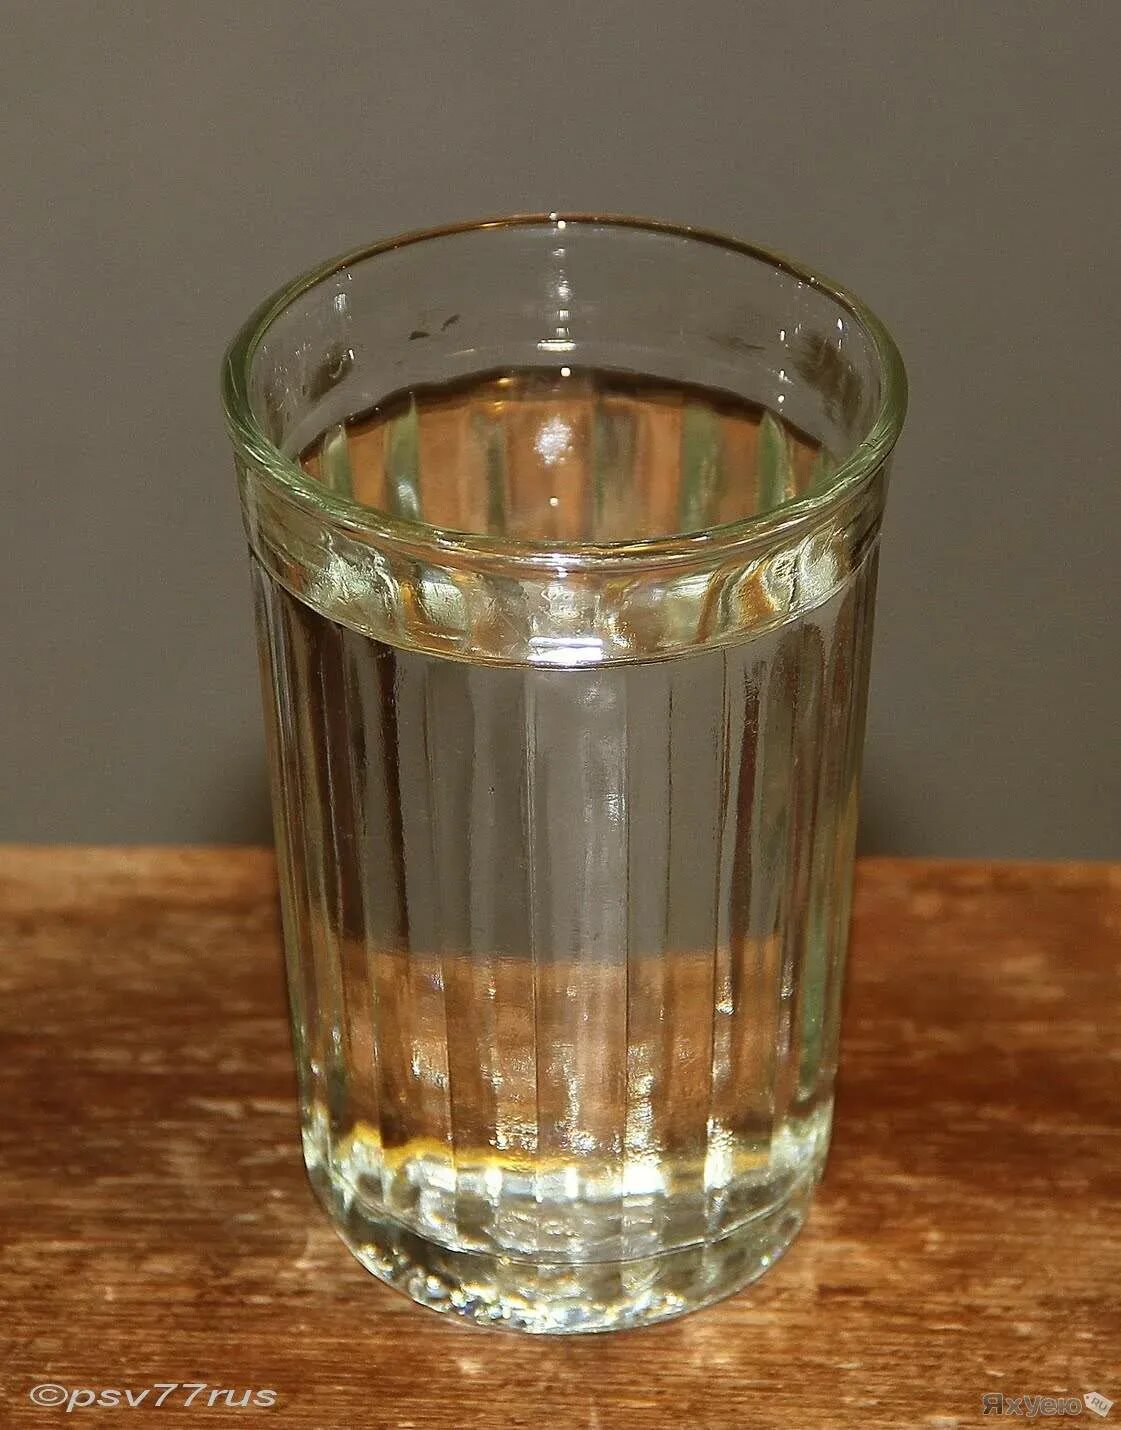 В стакан налили 120 мл воды. Граненый стакан 100 грамм. Граненый стакан с водой. Полный стакан.